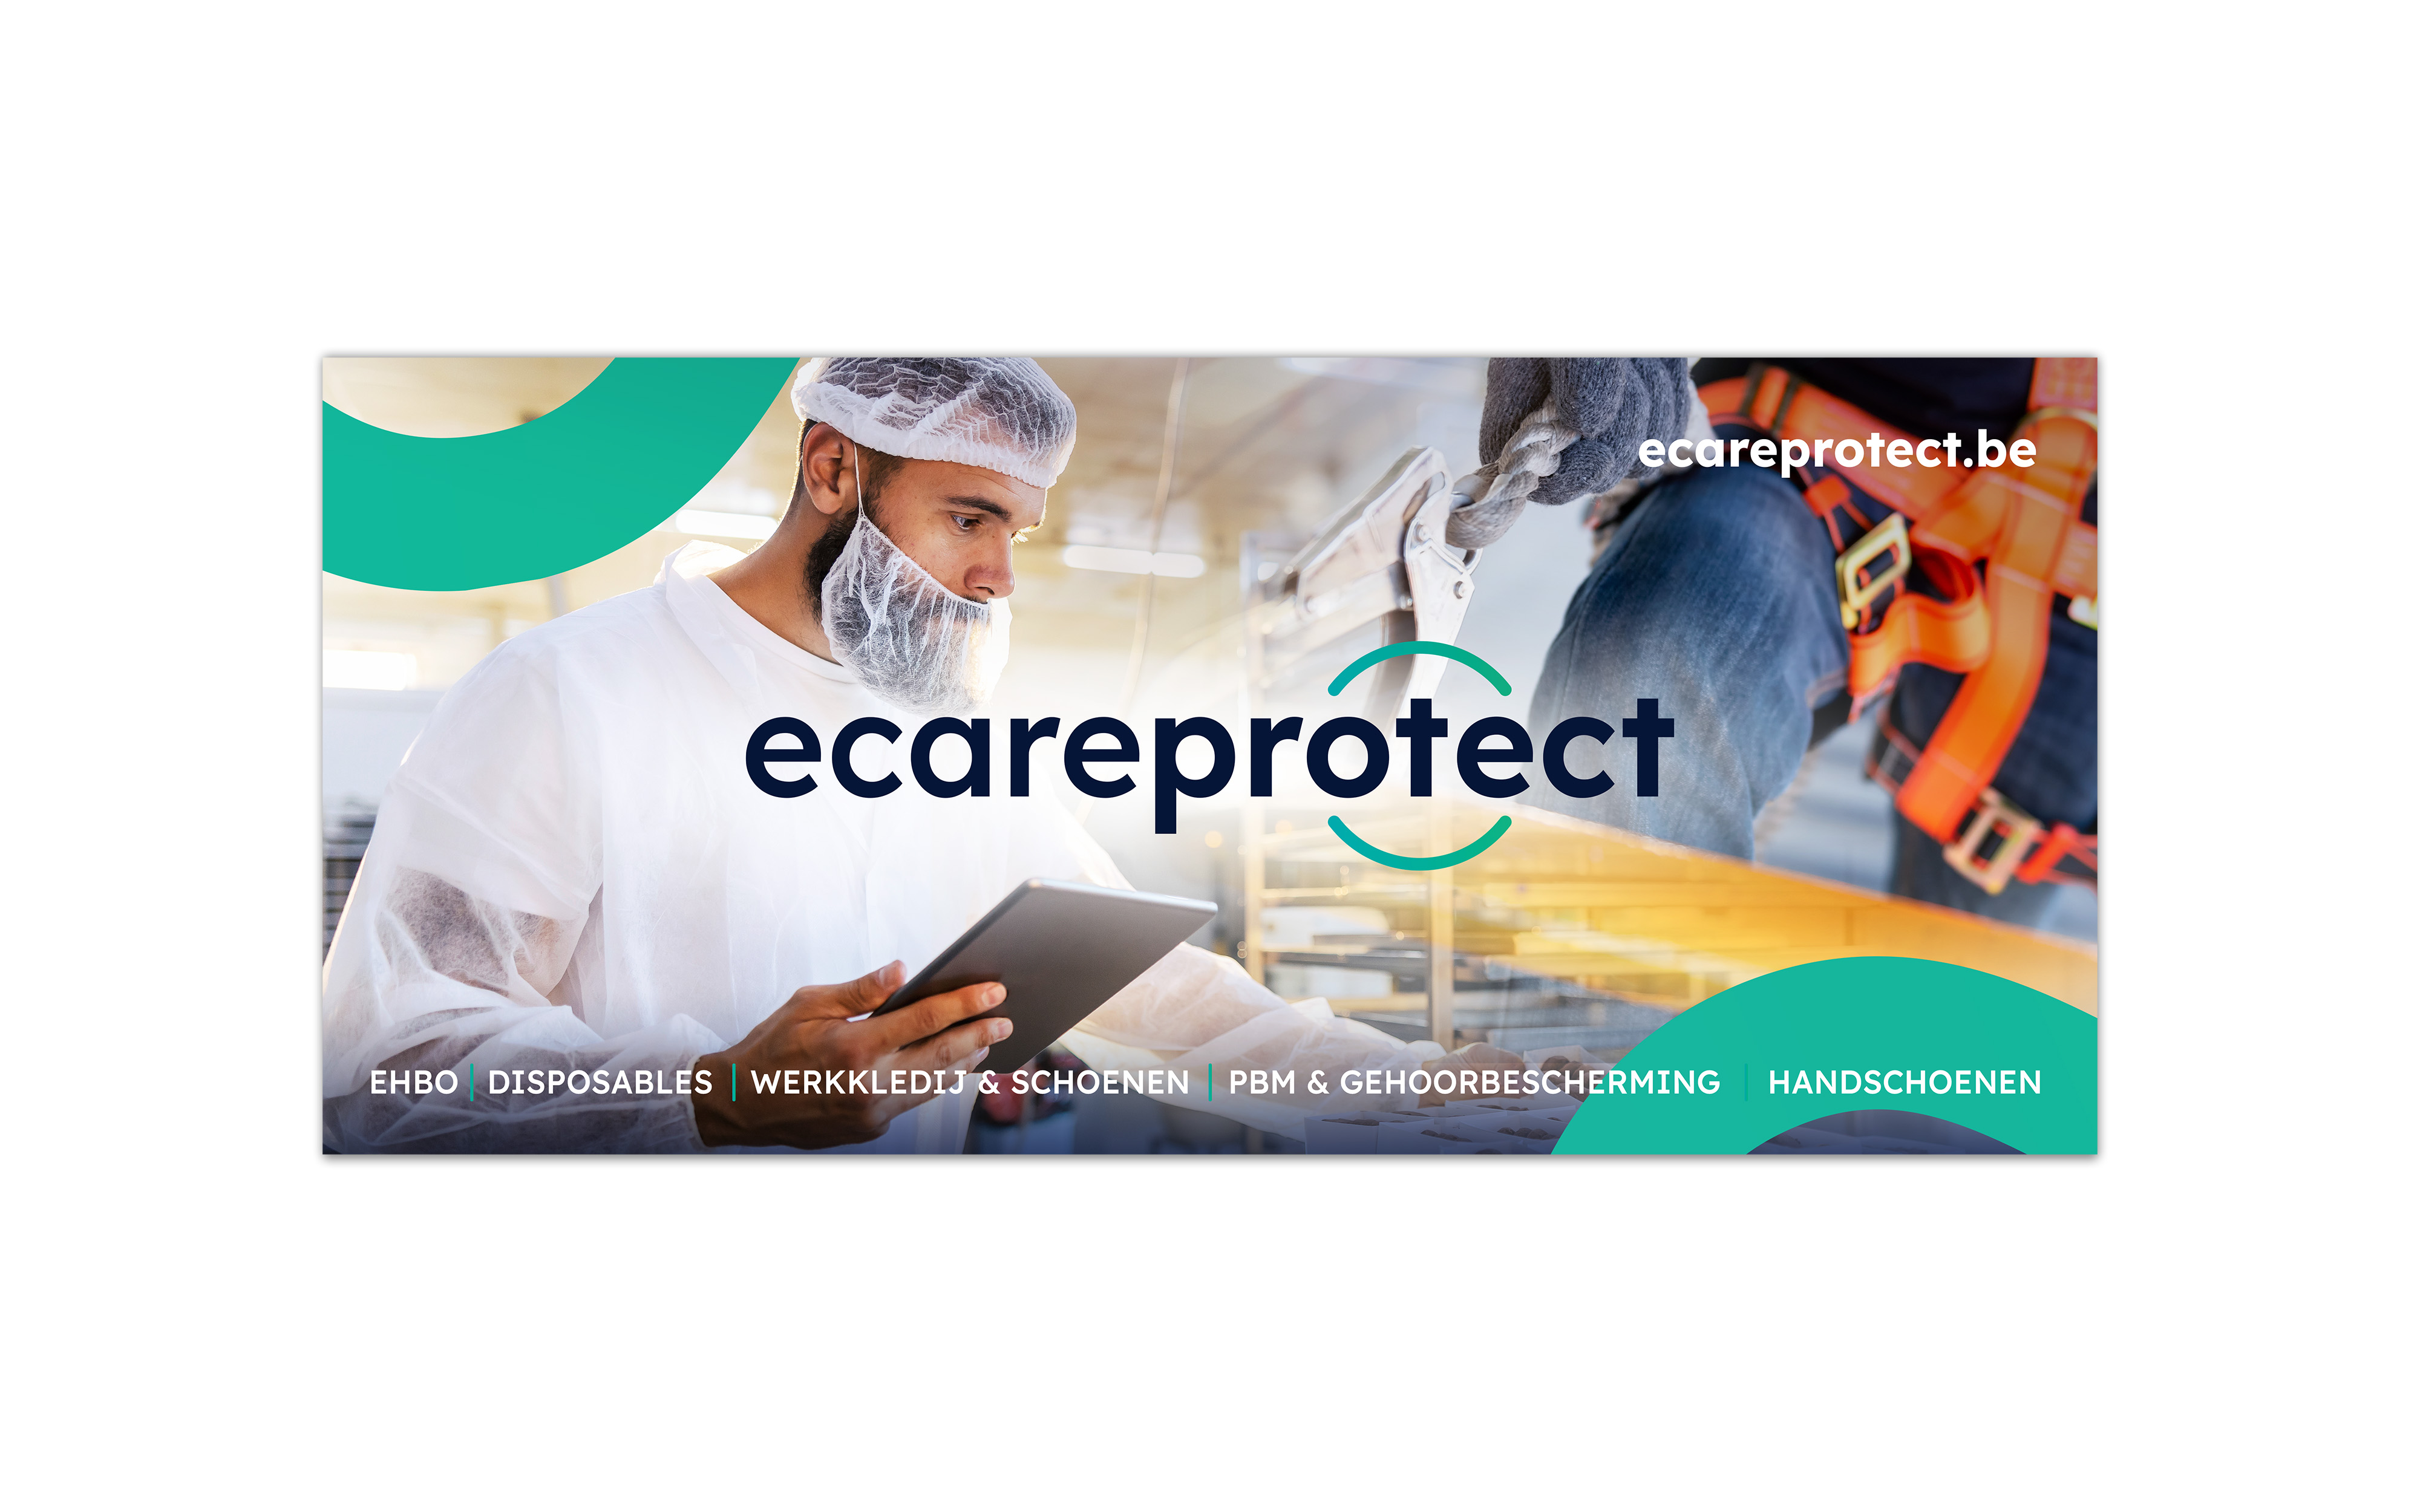 Ecare protect